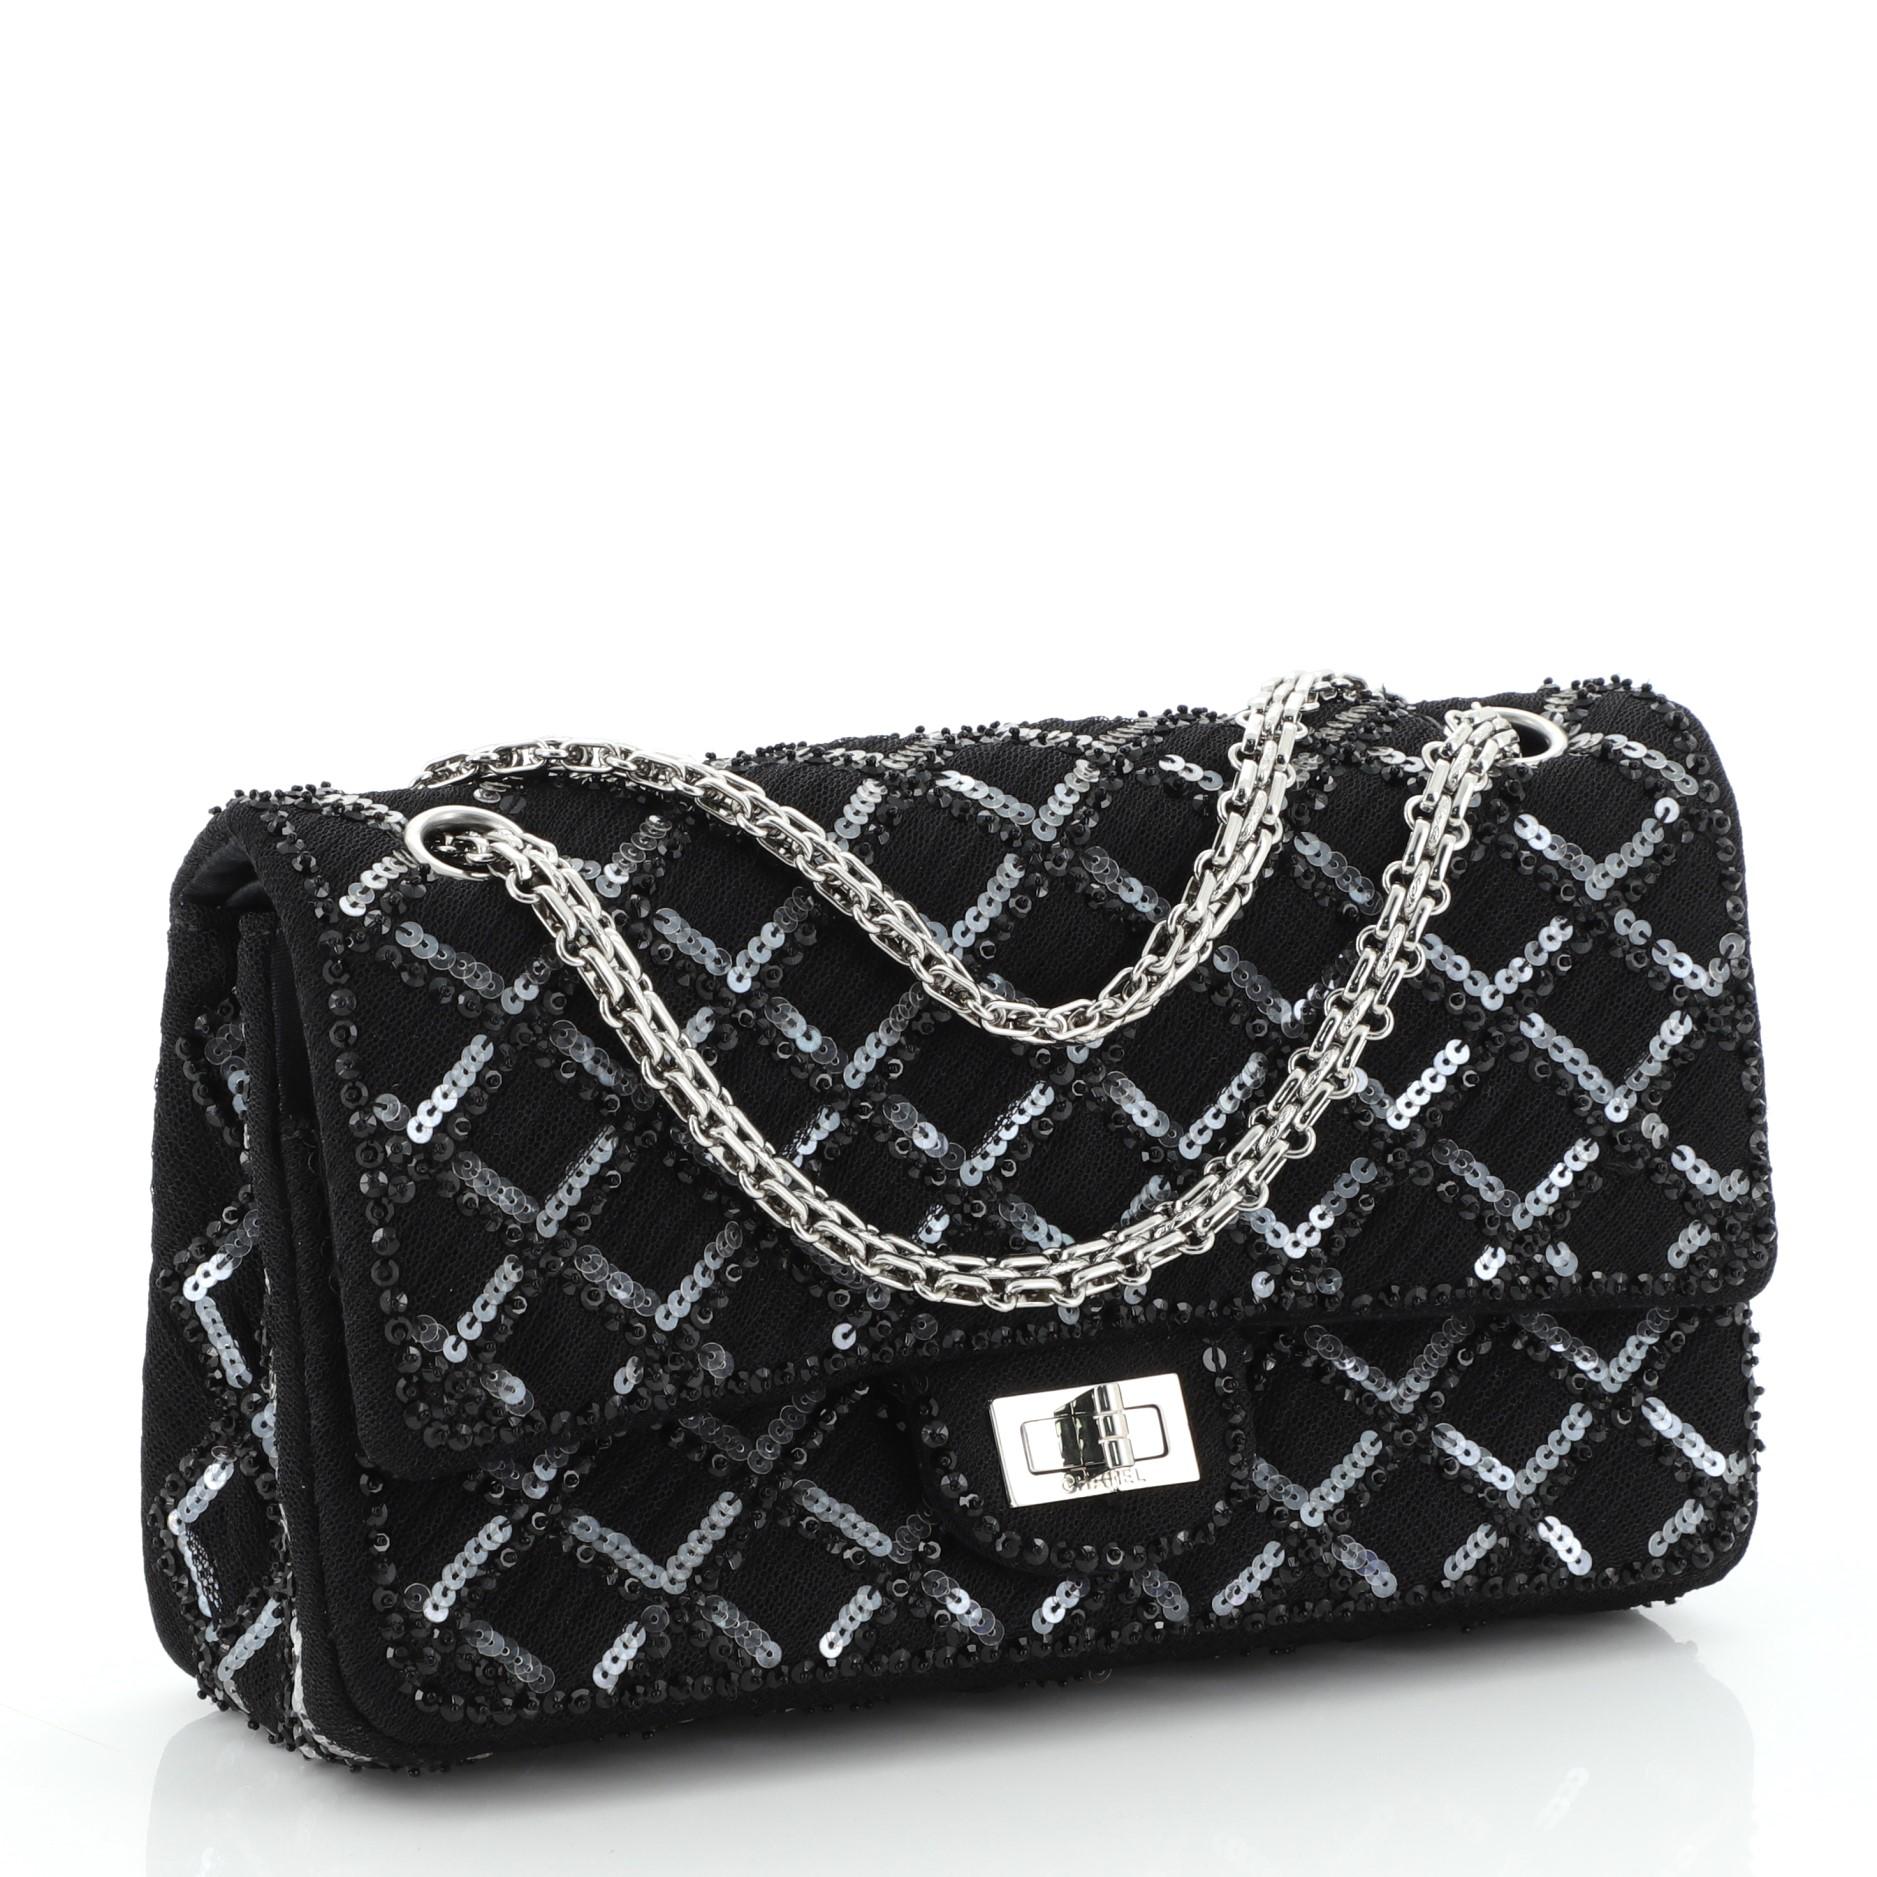 Black Chanel Reissue 2.55 Flap Bag Quilted Embellished Grosgrain 225